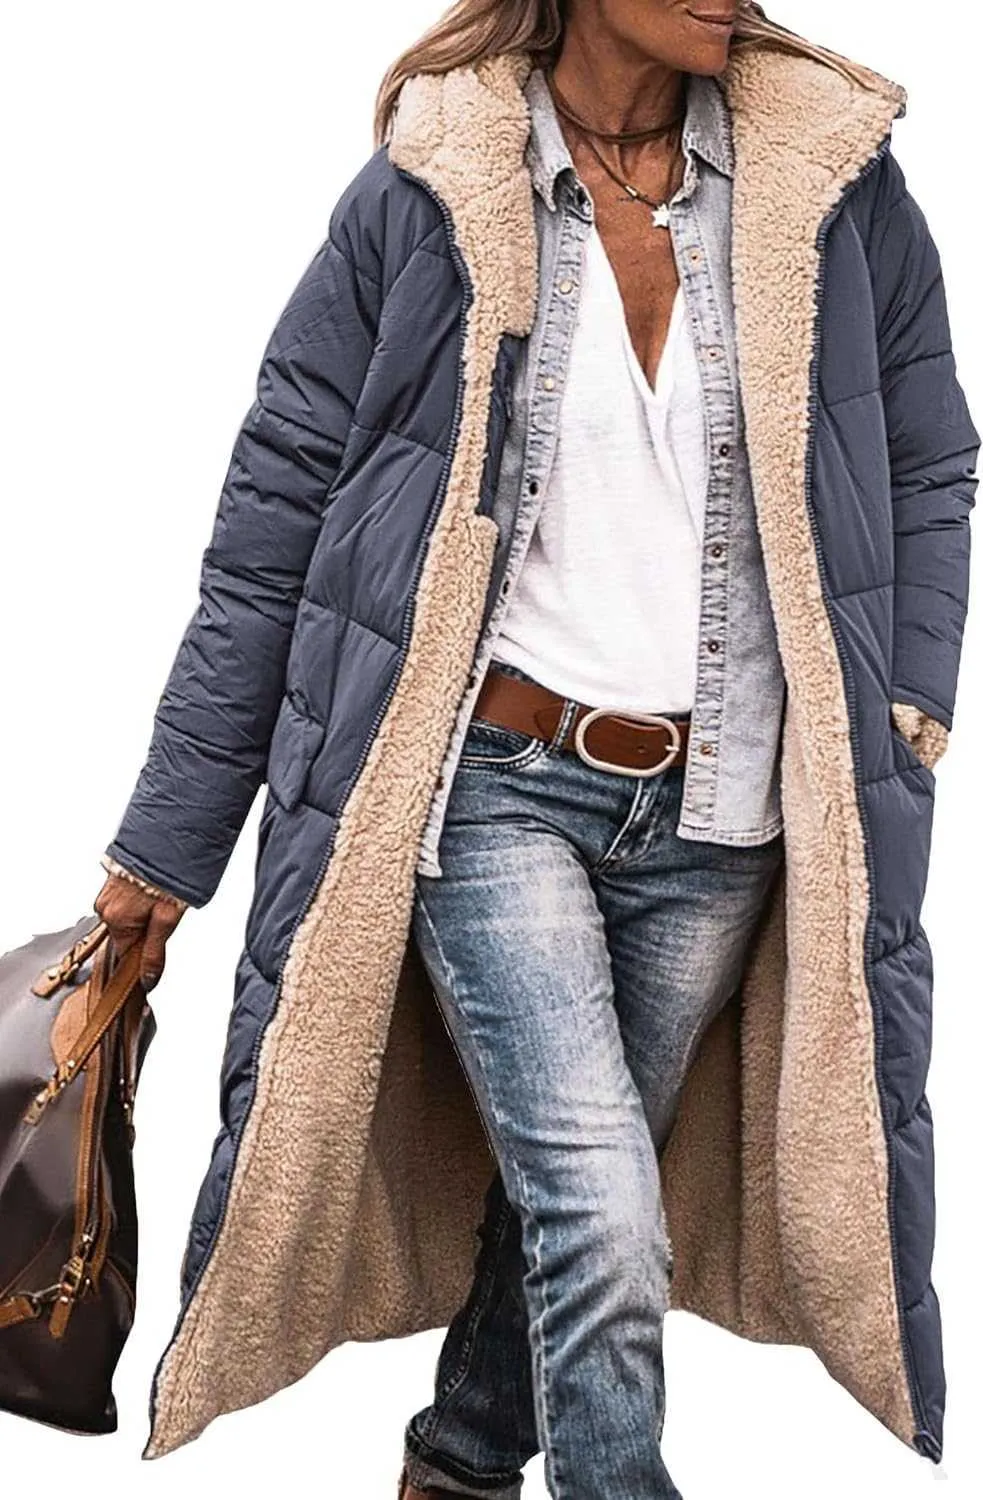 Piumino donna cappotto invernale moda abbigliamento extra-lungo ispessito caldo montone shearling cappotto lungo double face 9CU3R